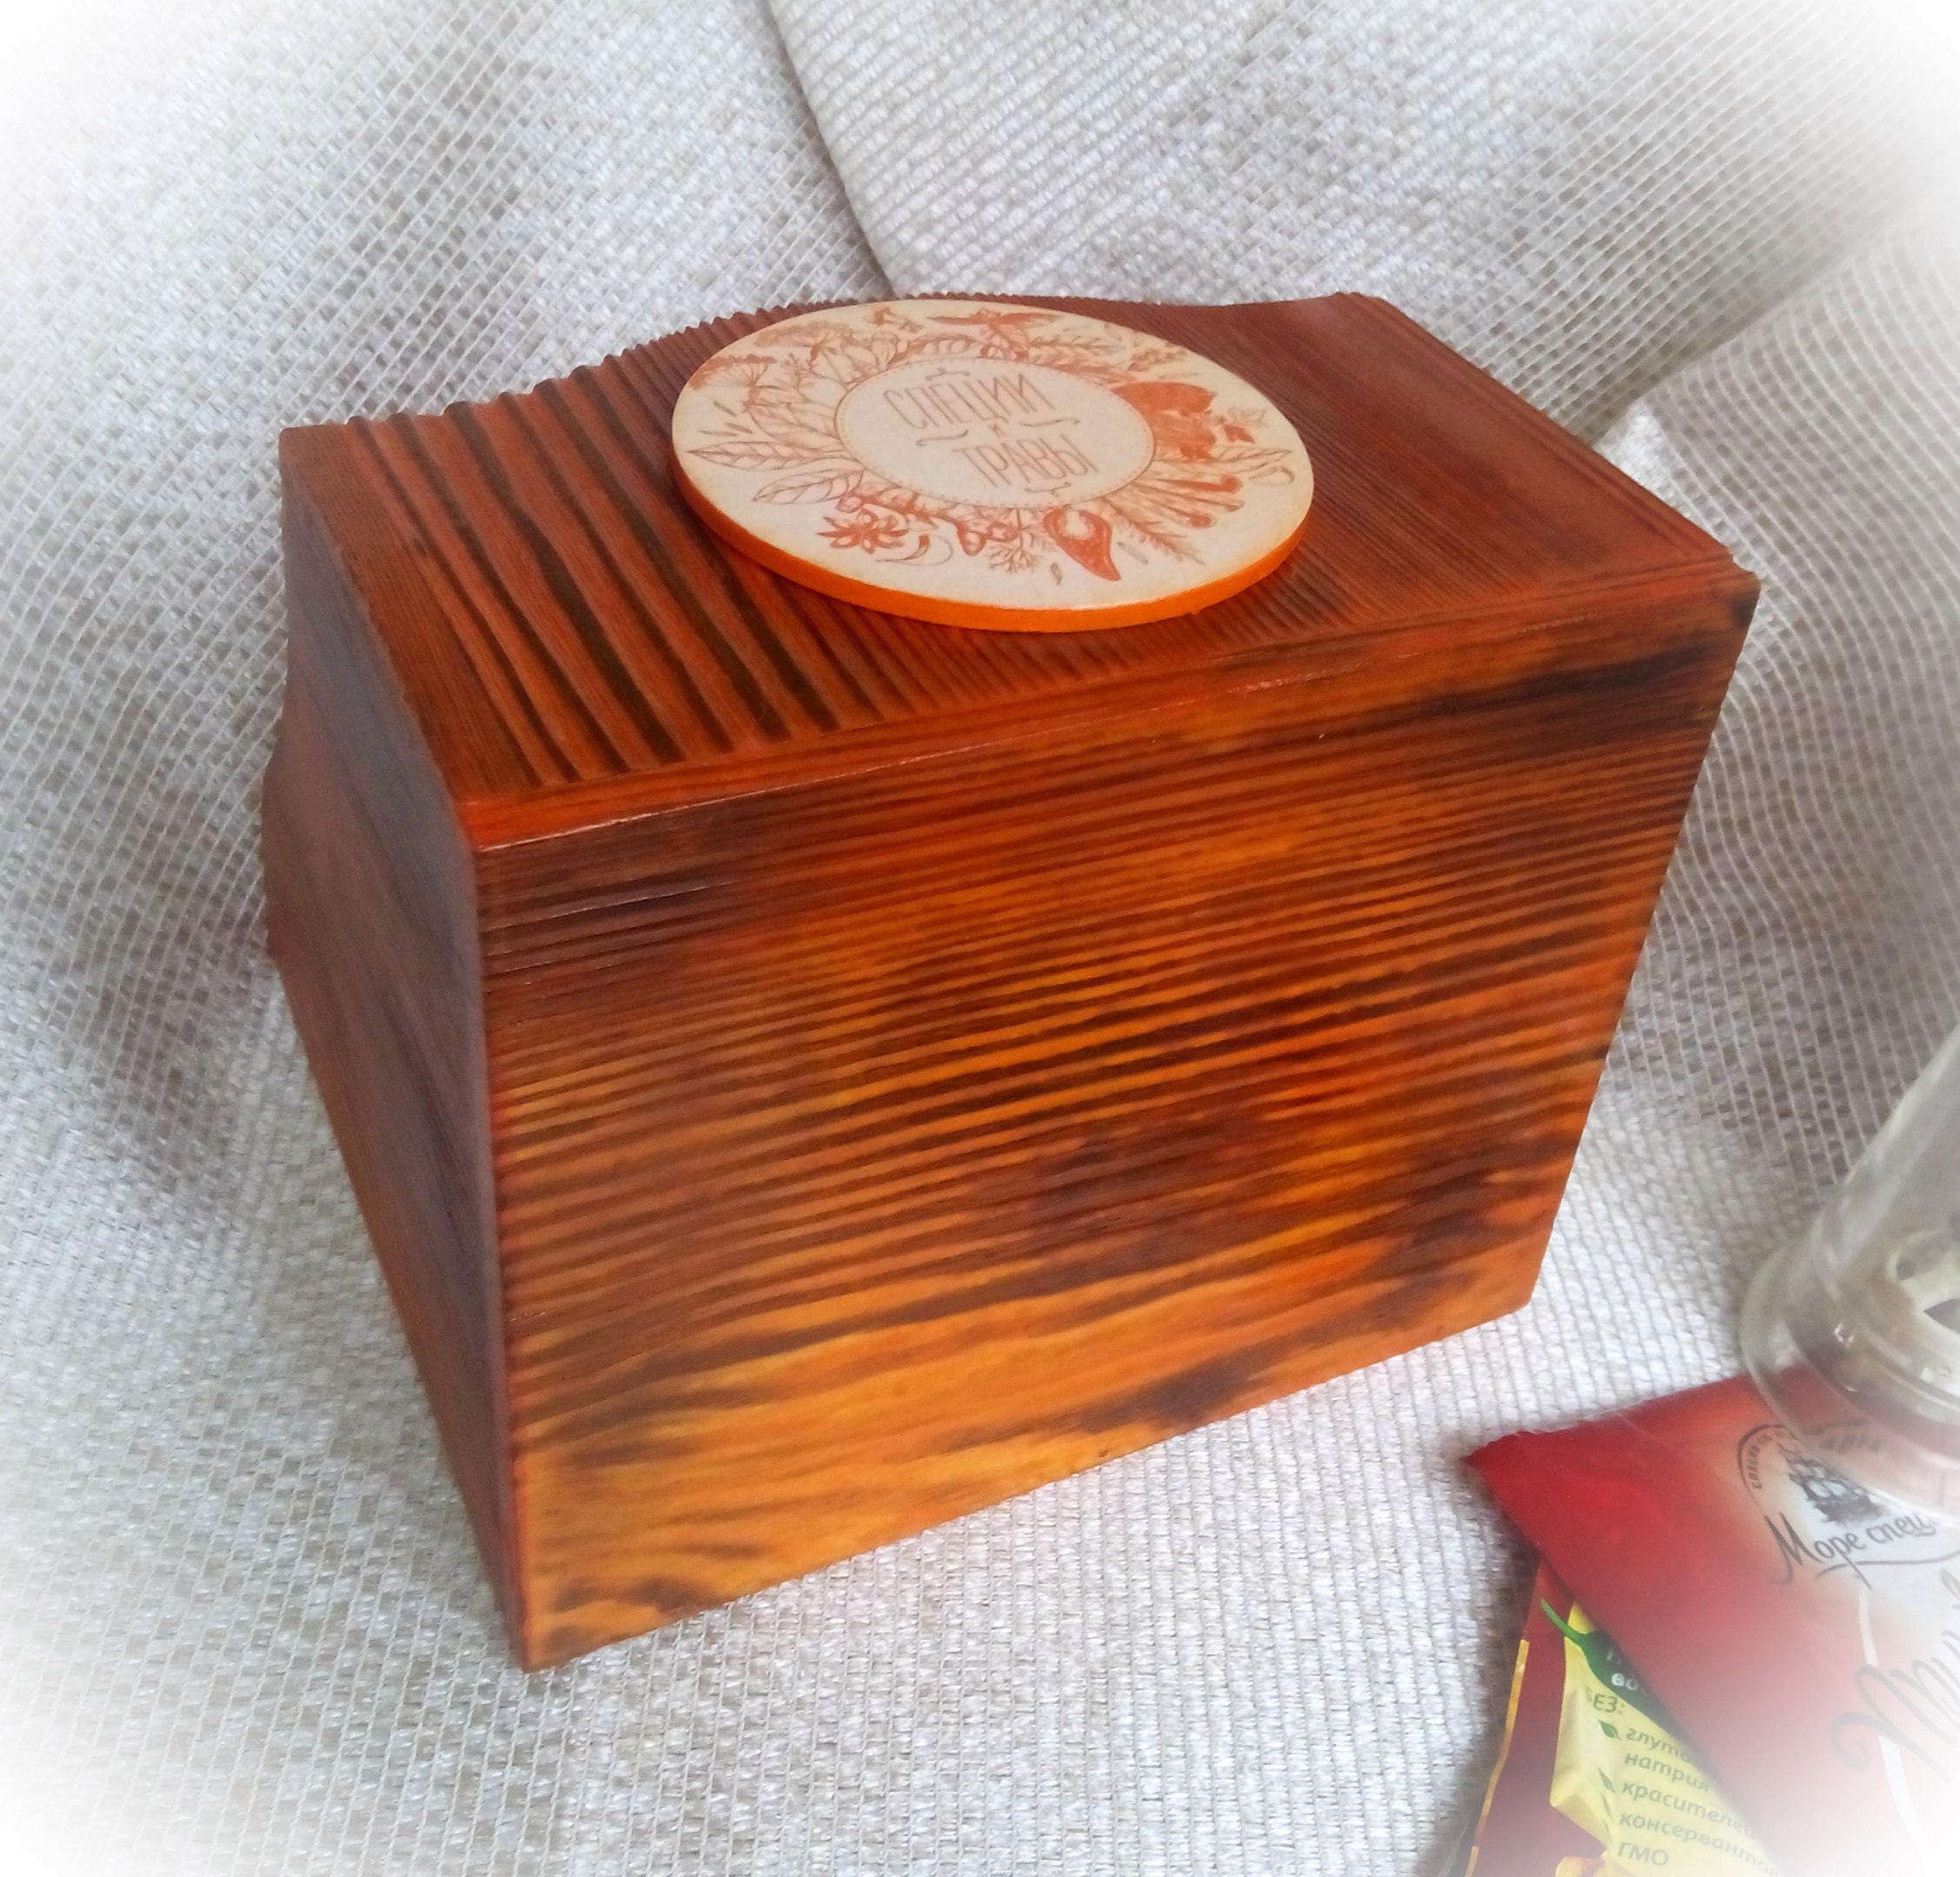 Wooden kitchen storage Recipe box Kitchen accessory Orange | Etsy